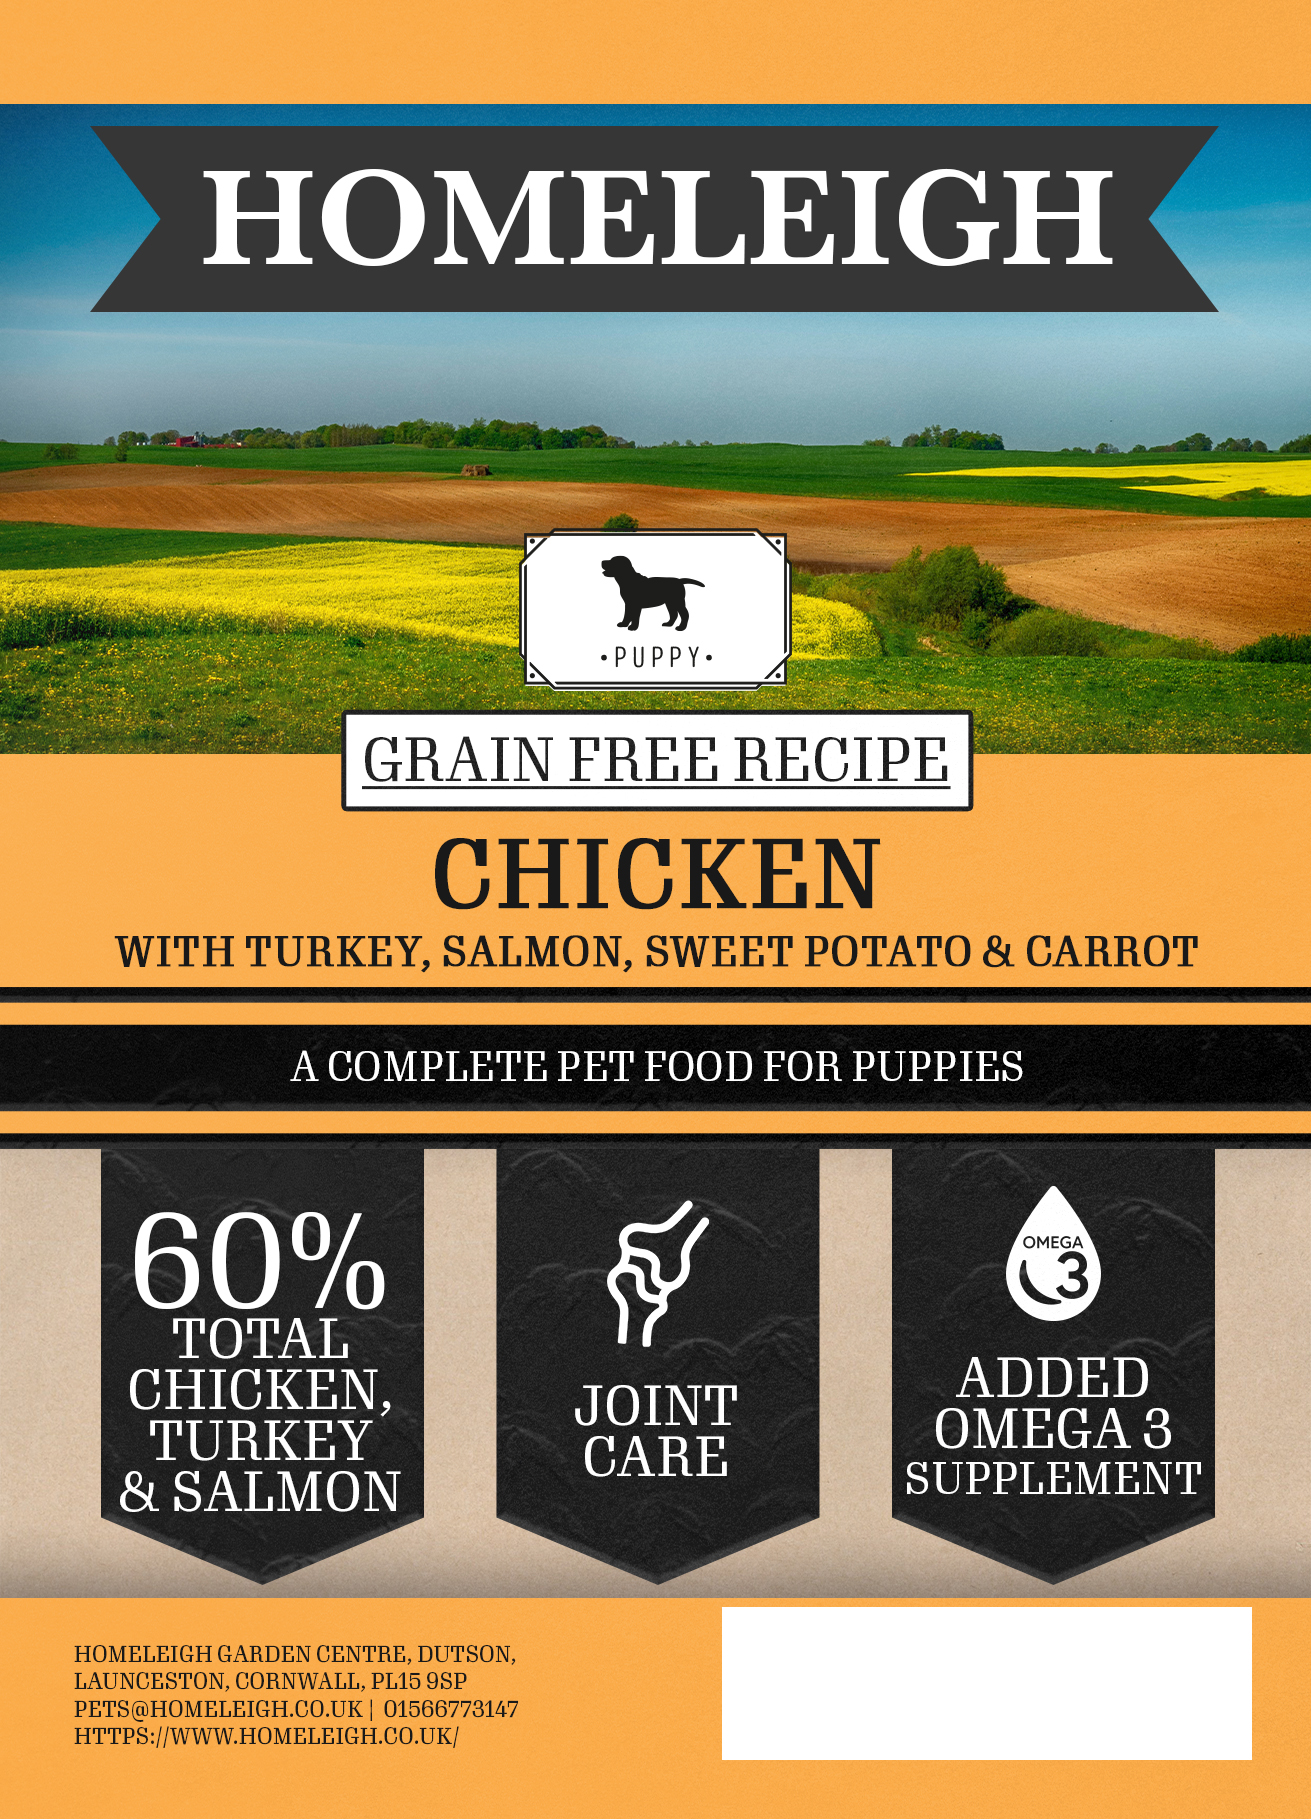 Grain free Puppy Chicken, Turkey & Salmon 2kg